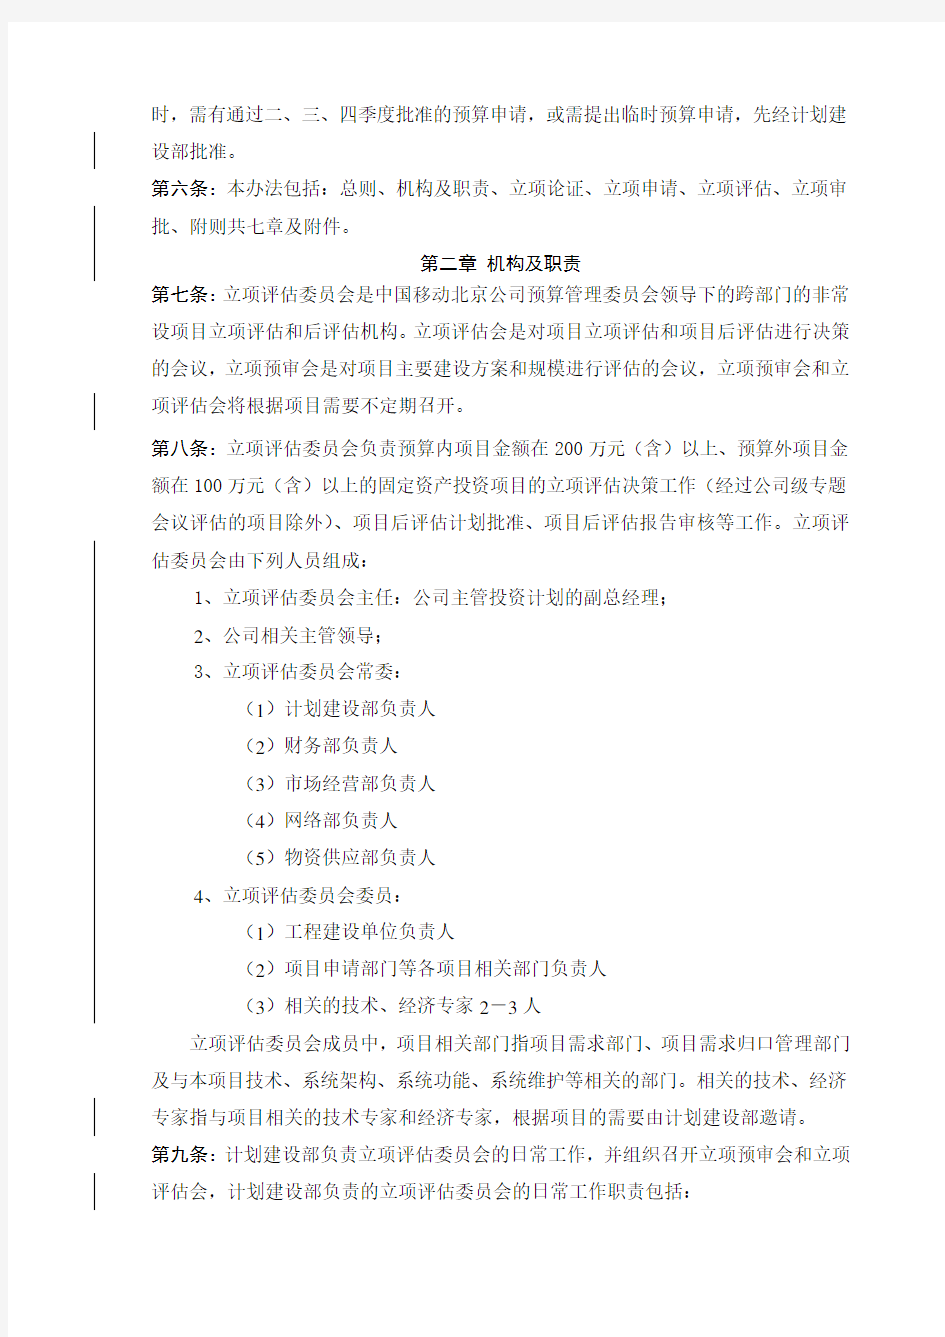 中国移动通信集团北京有限公司固定资产投资项目立项管理办法